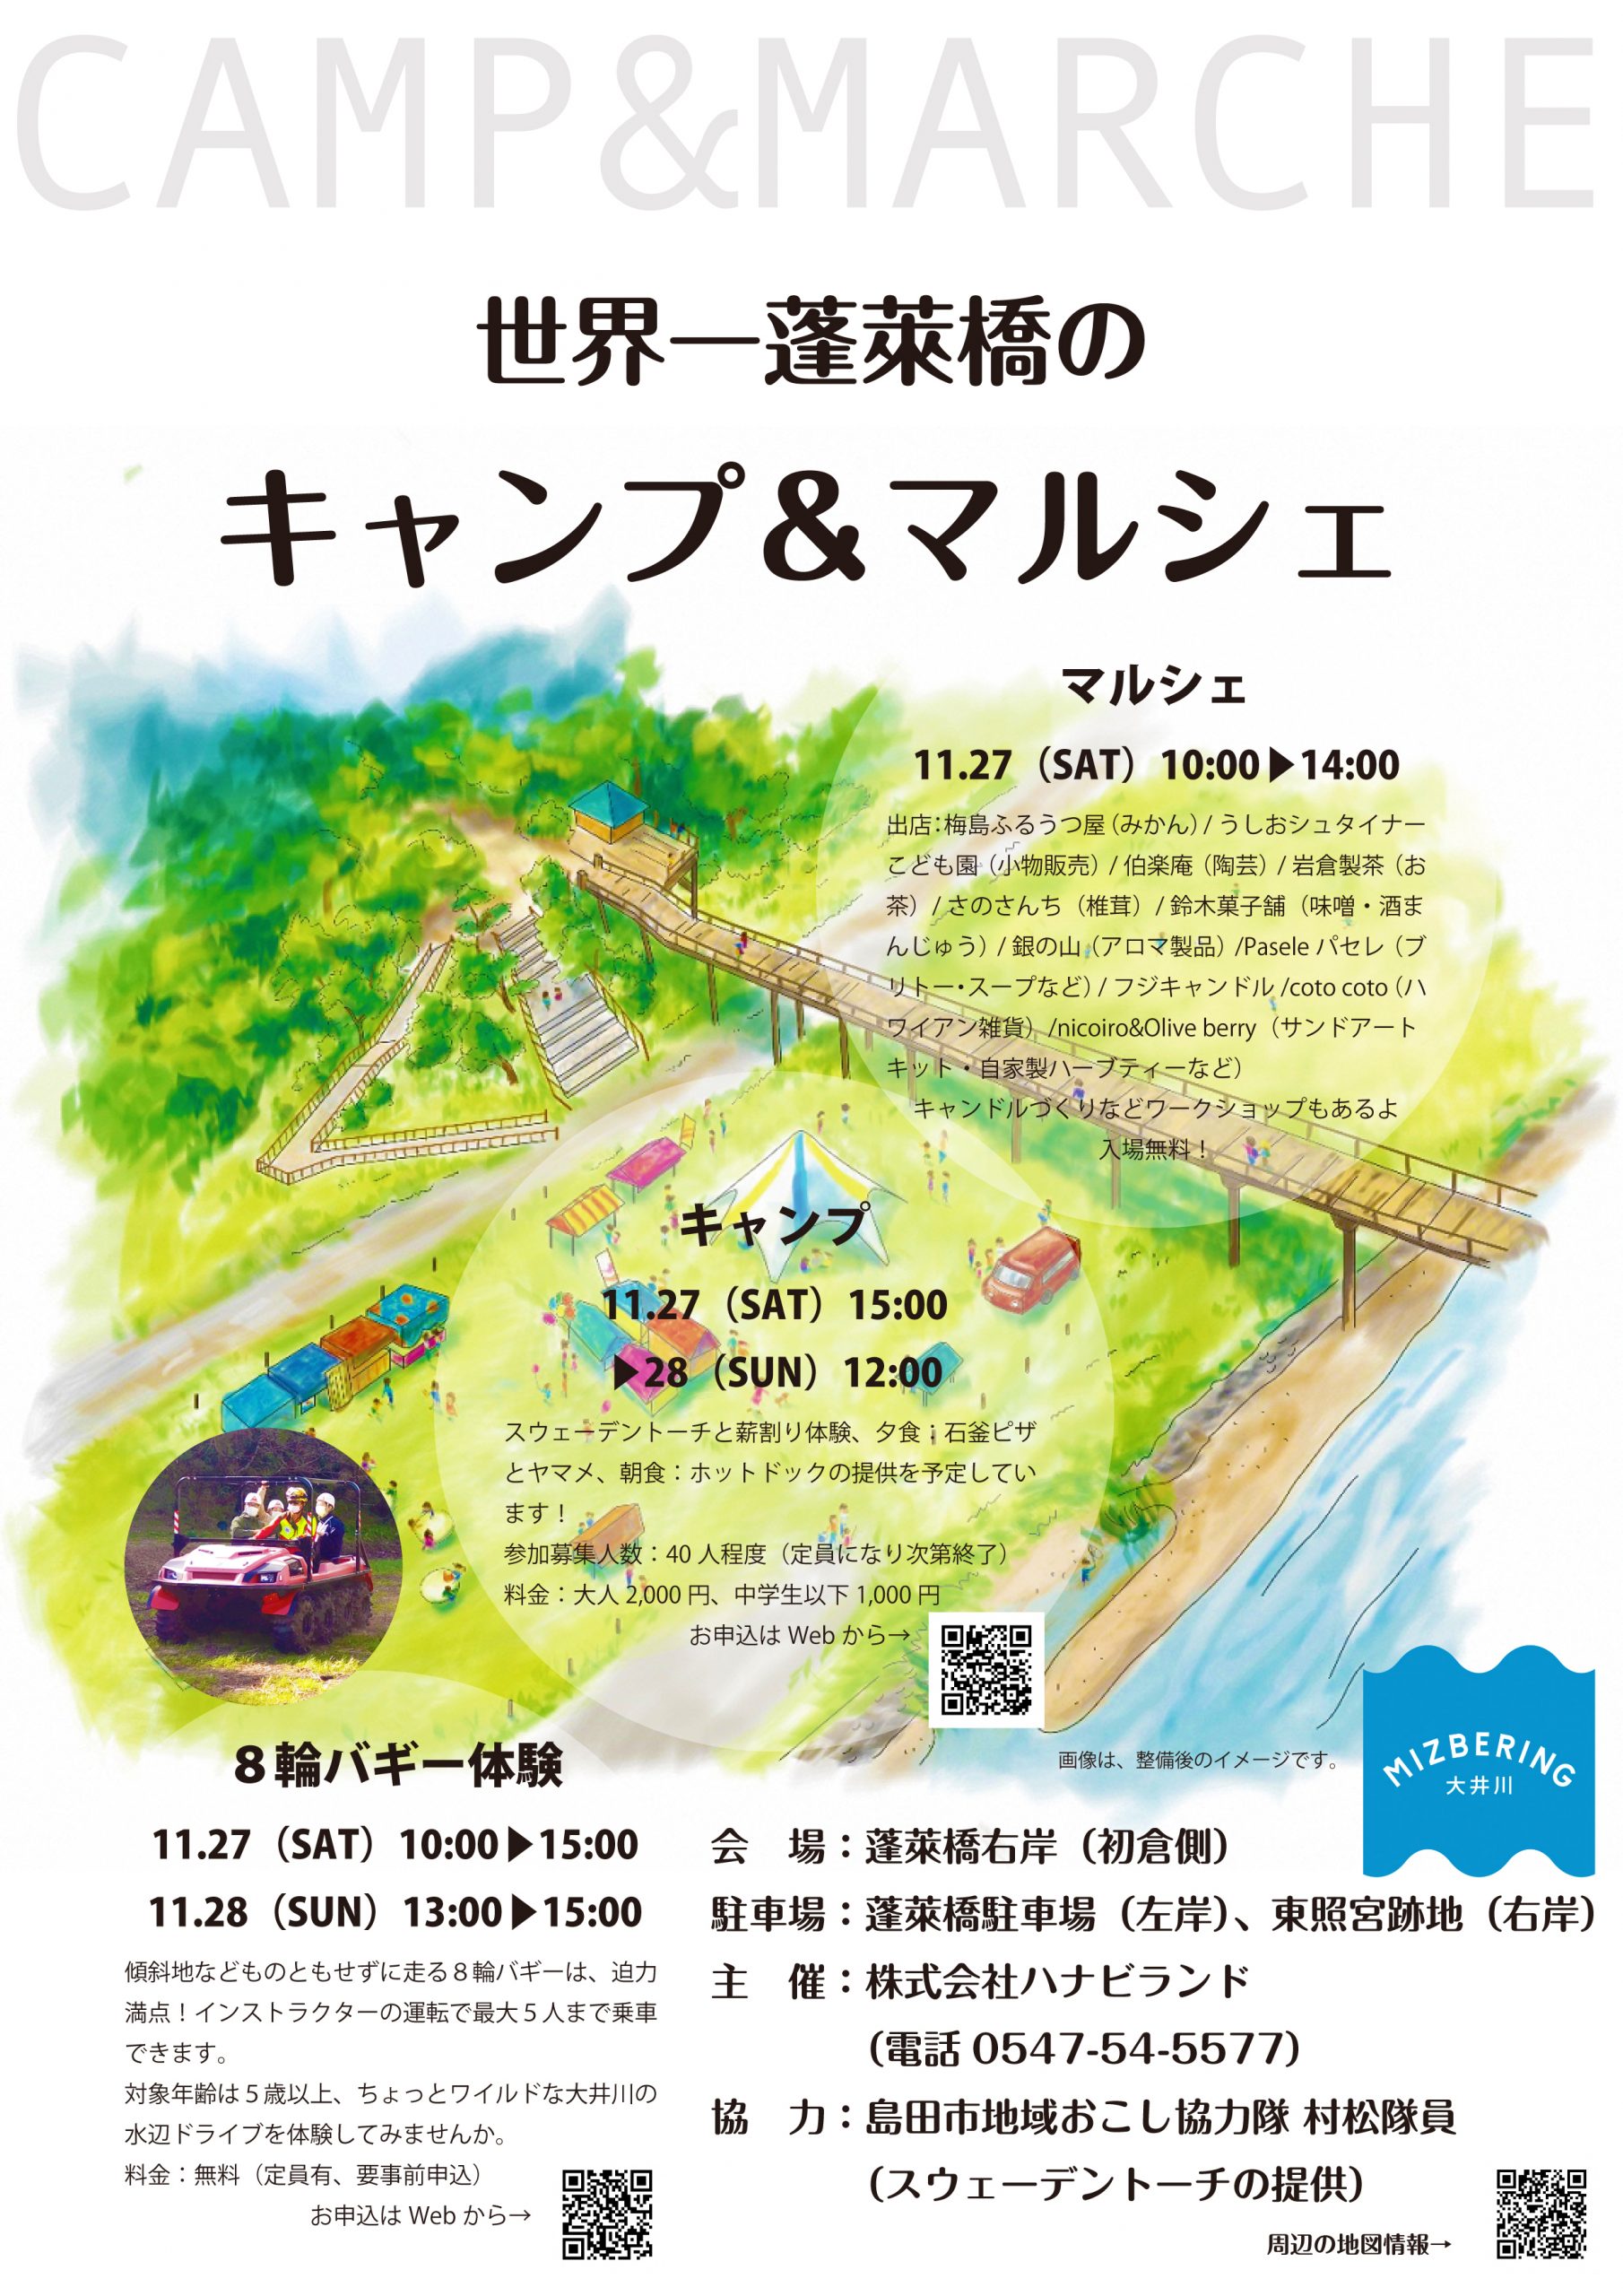 【イベント終了】世界一蓬莱橋のキャンプ＆マルシェを開催します！